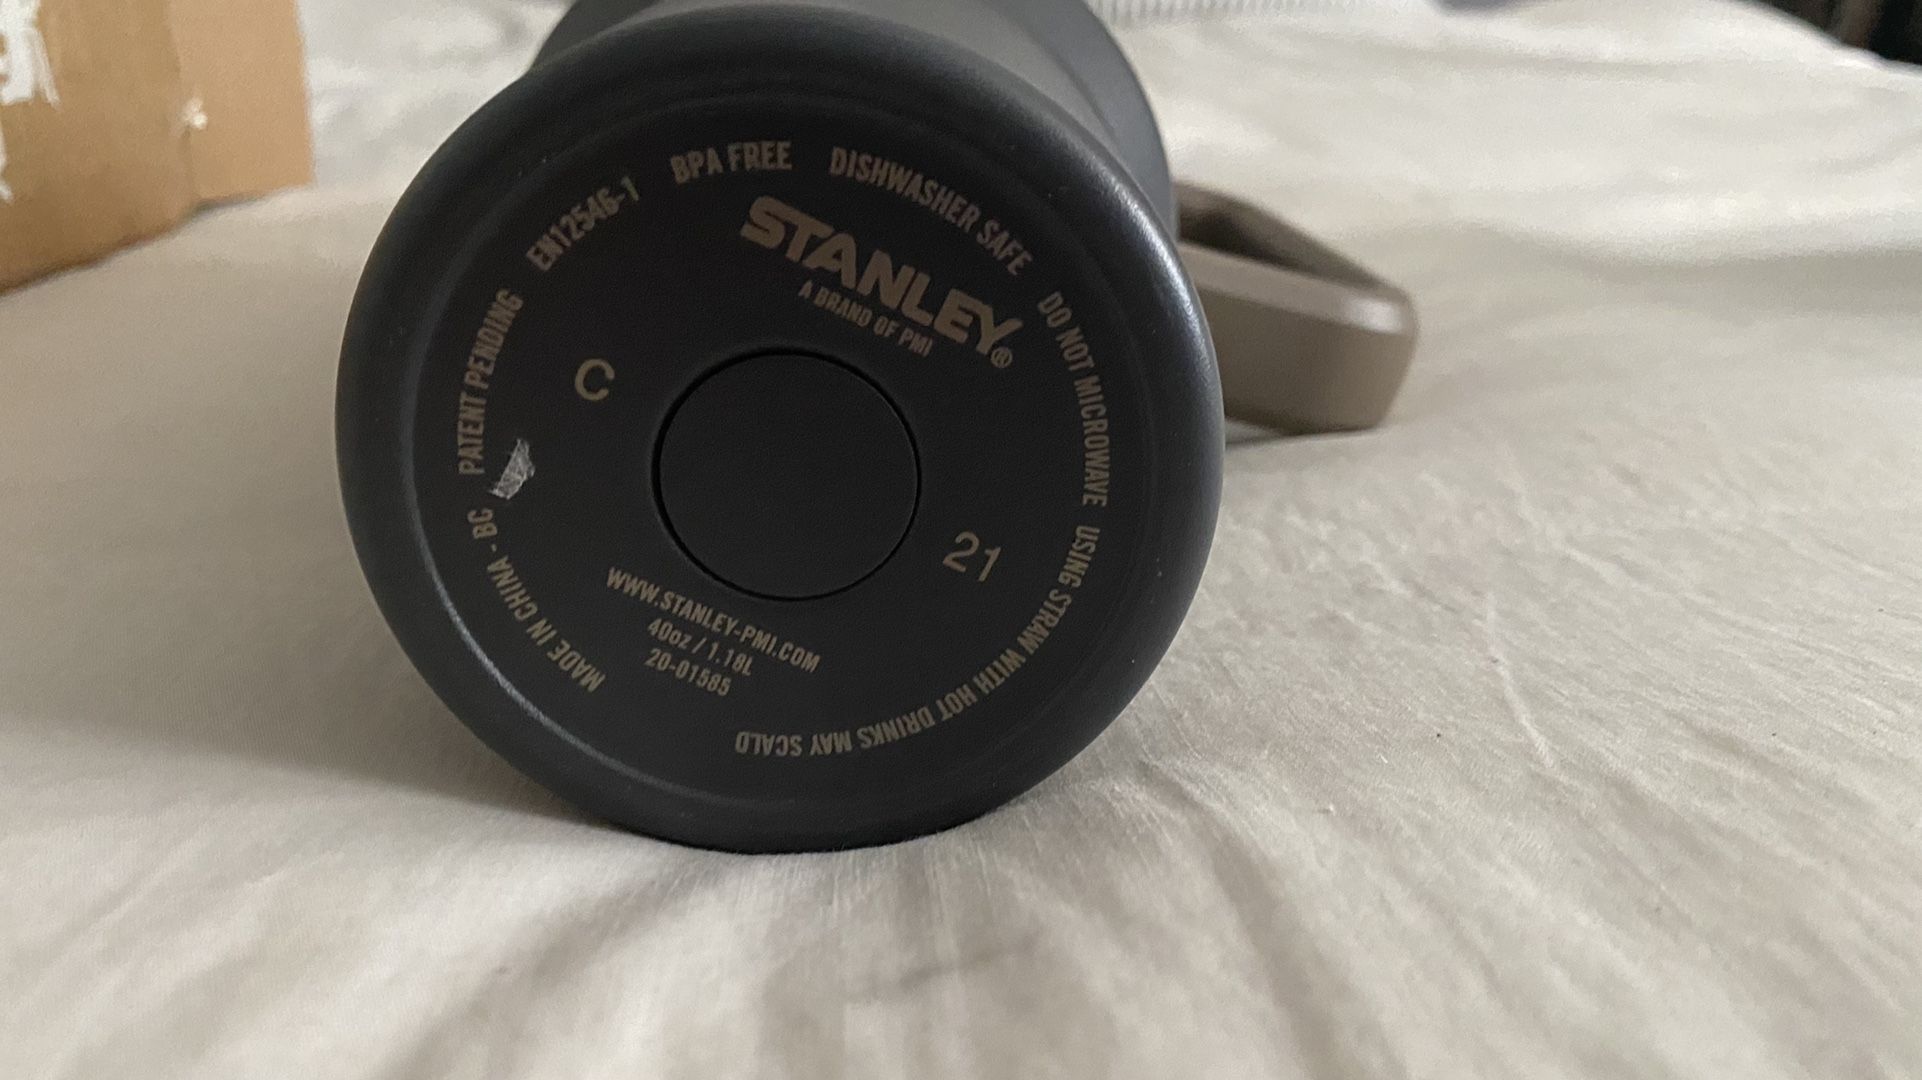 NEW - Stanley 40oz Tumbler - Rare Citron Mix for Sale in Phoenix, AZ -  OfferUp